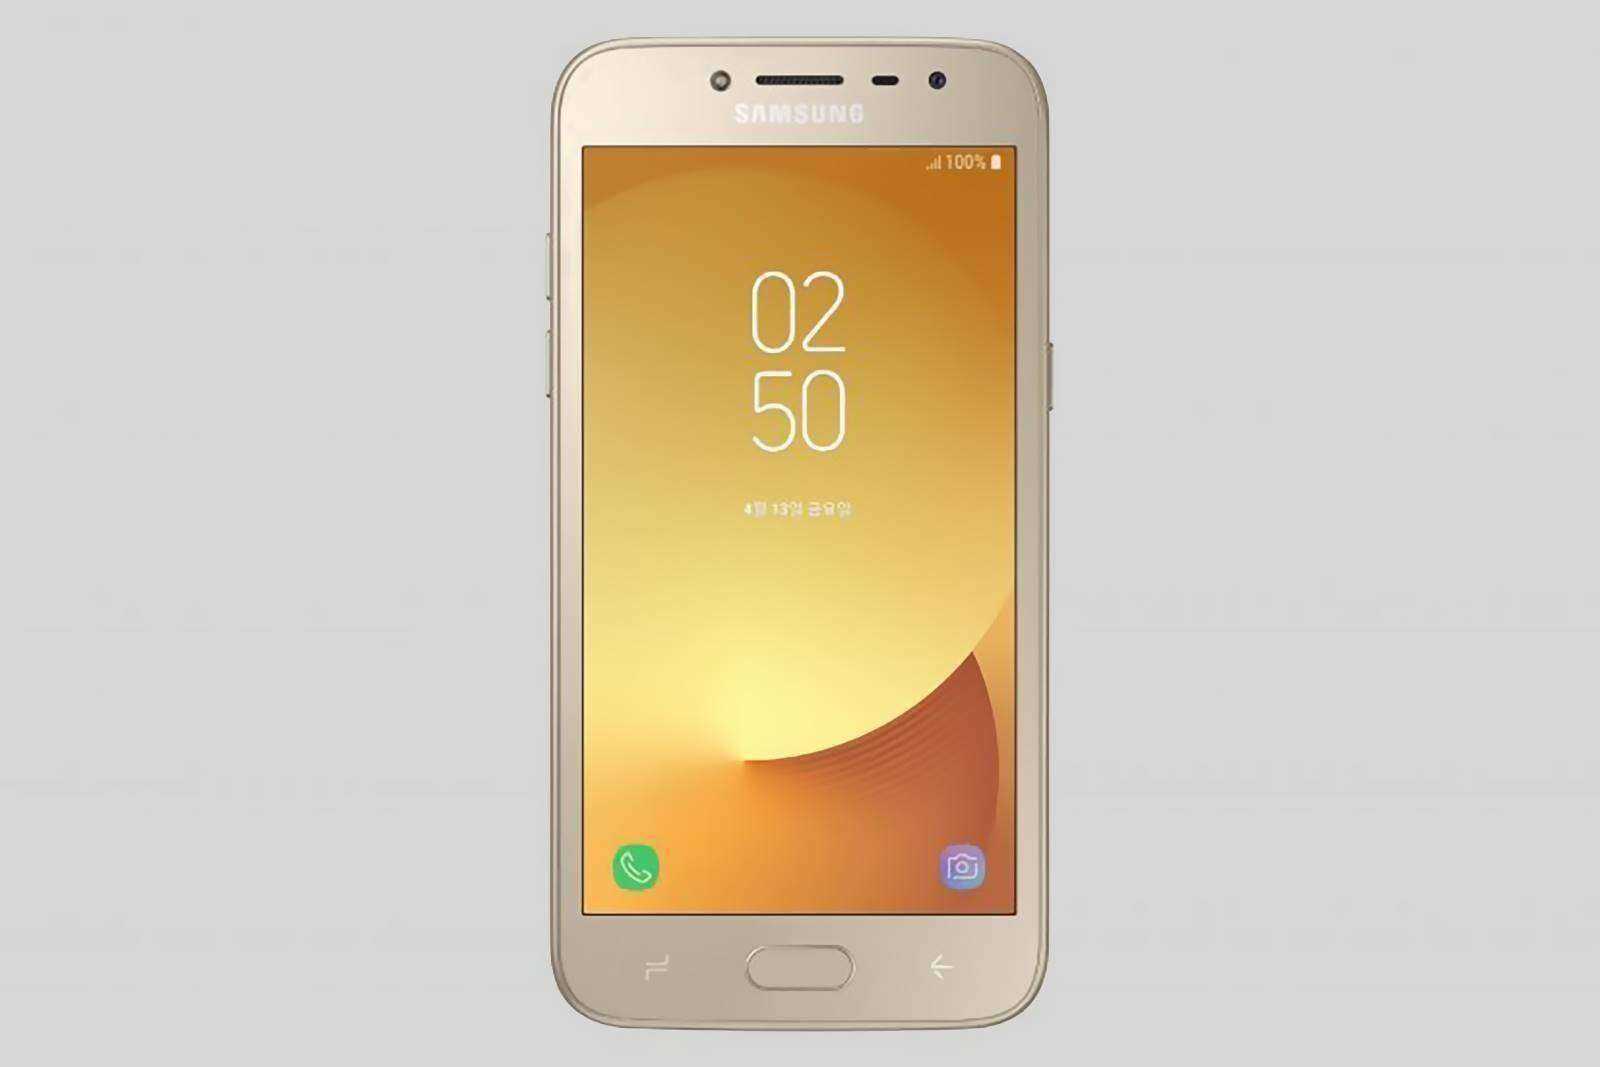 Samsung Announces New No-Data SmartPhone